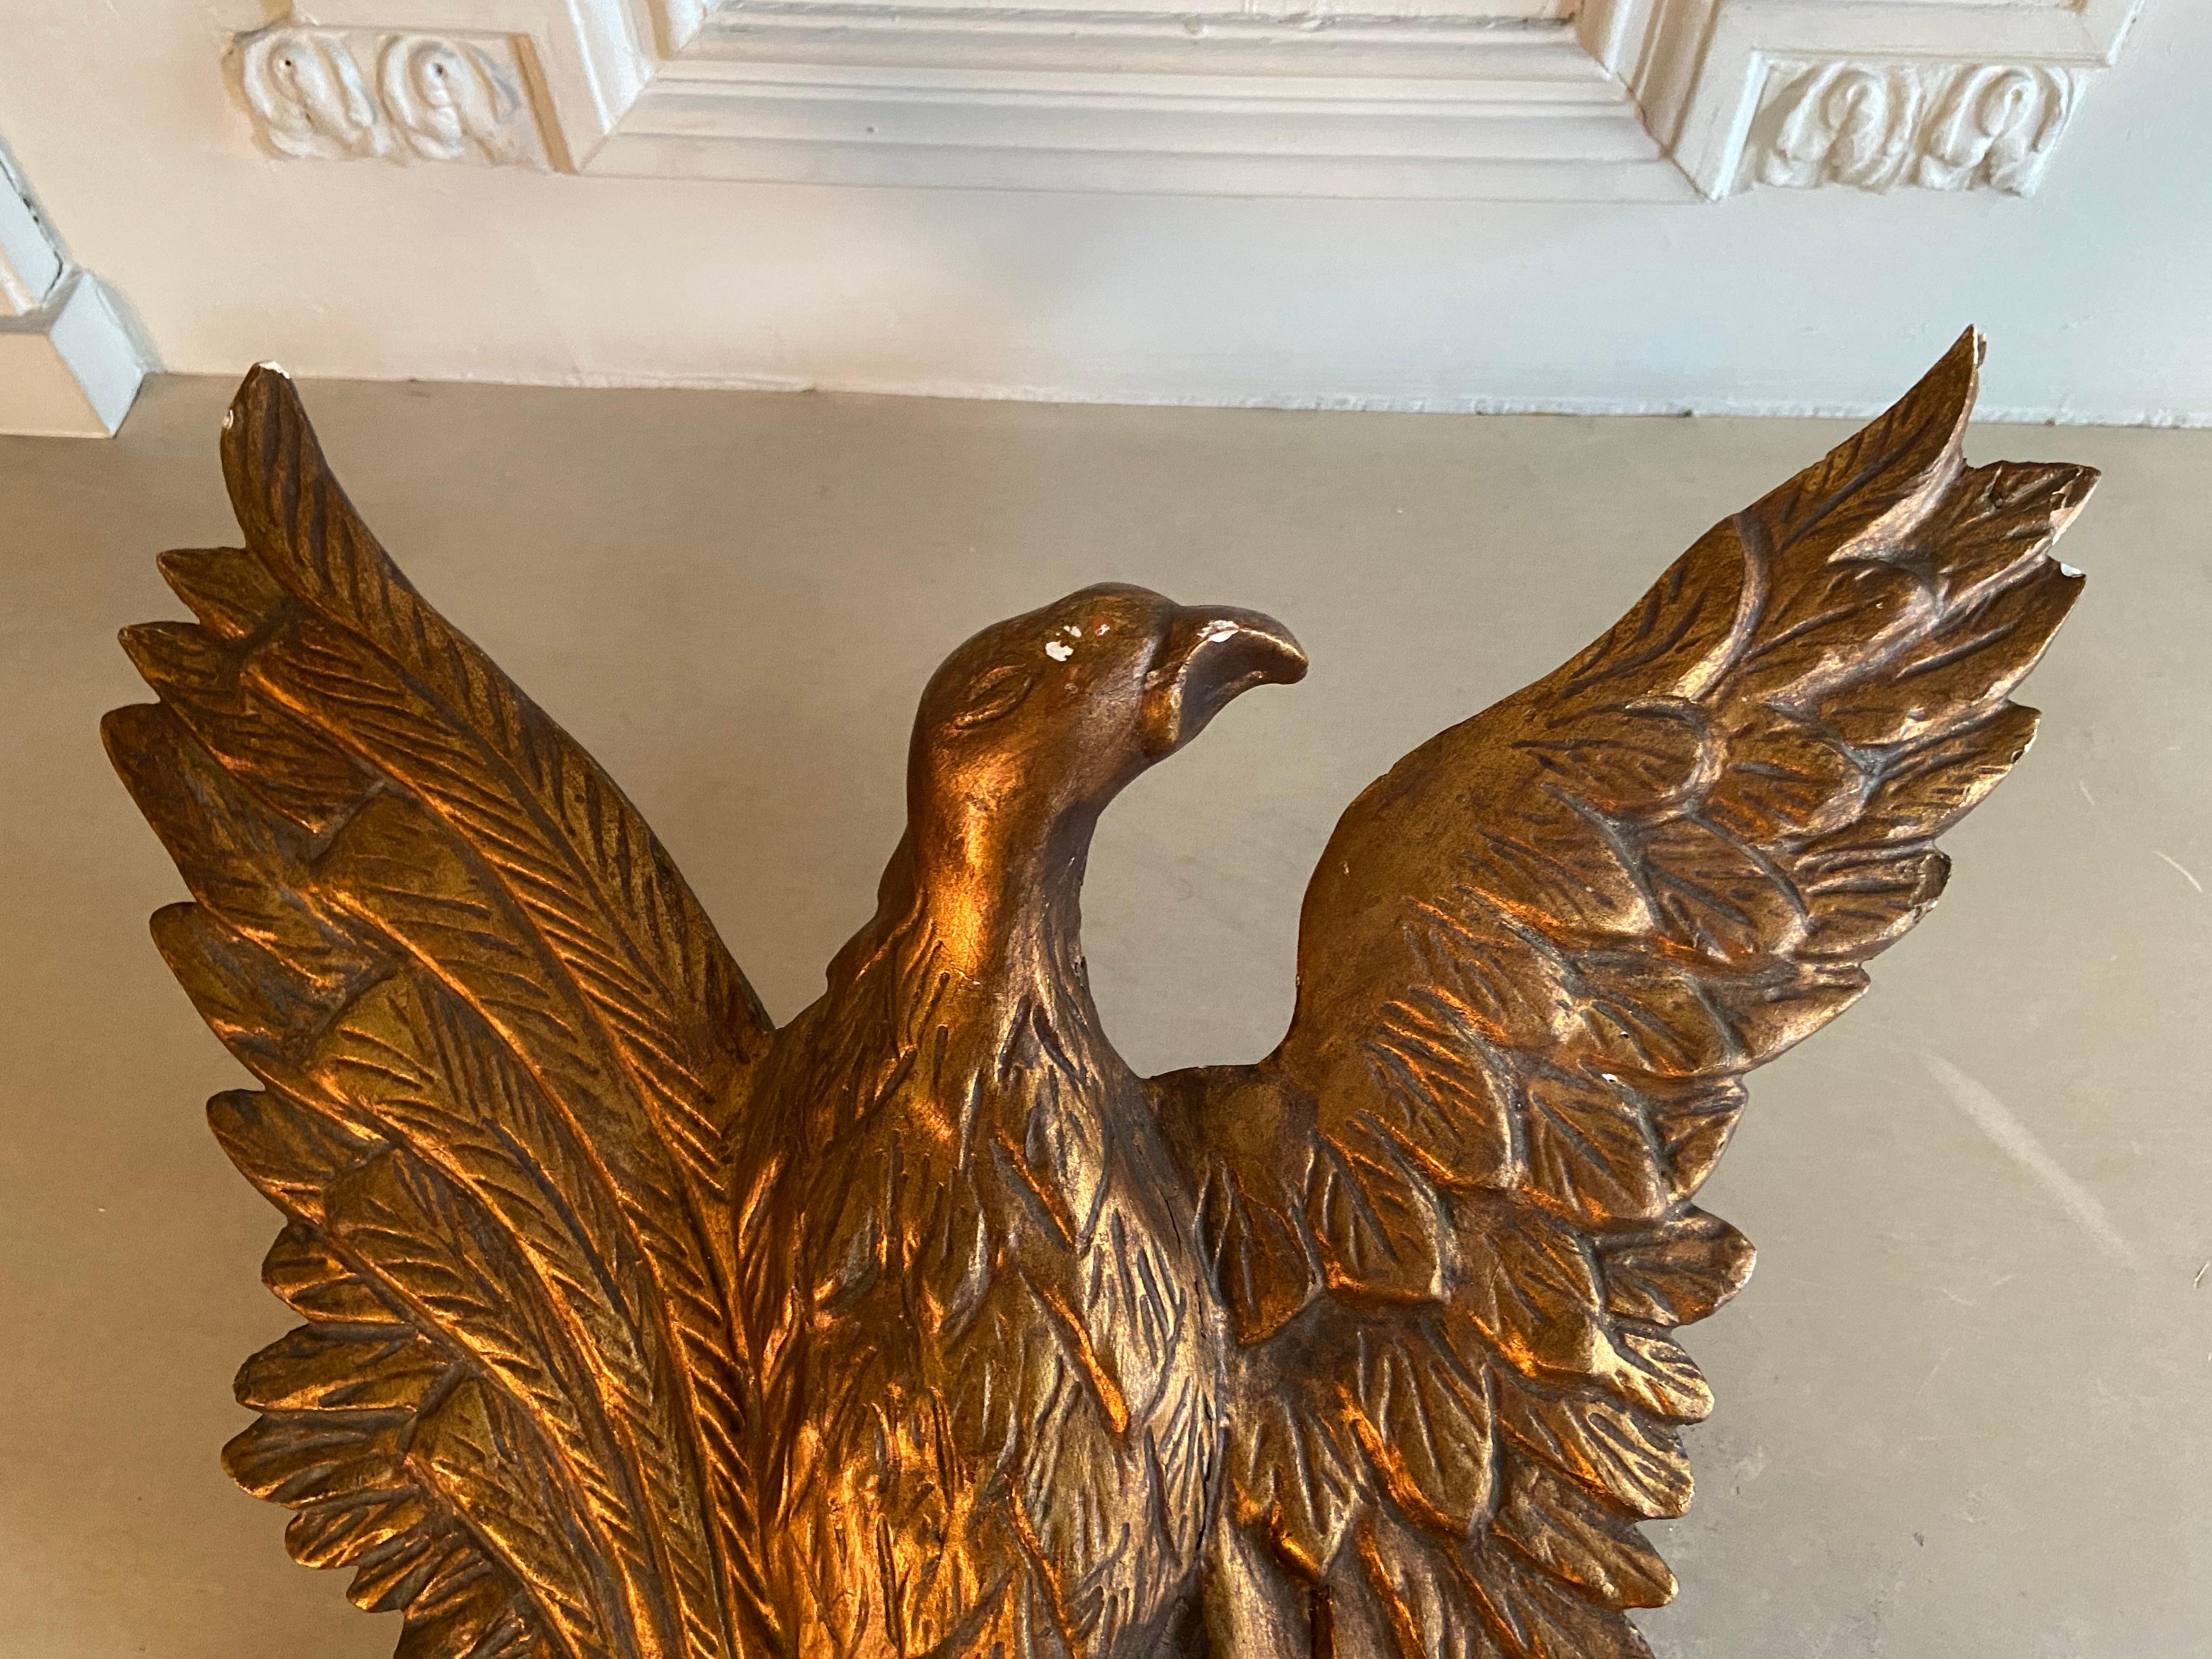 Empire Spiegel aus vergoldetem Holz mit Adlerdekor 
spiegel aus vergoldetem Holz, 19. Jahrhundert. Imperium. Adler mit ausgebreiteten Flügeln. Zustand wie auf den Fotos zu sehen.